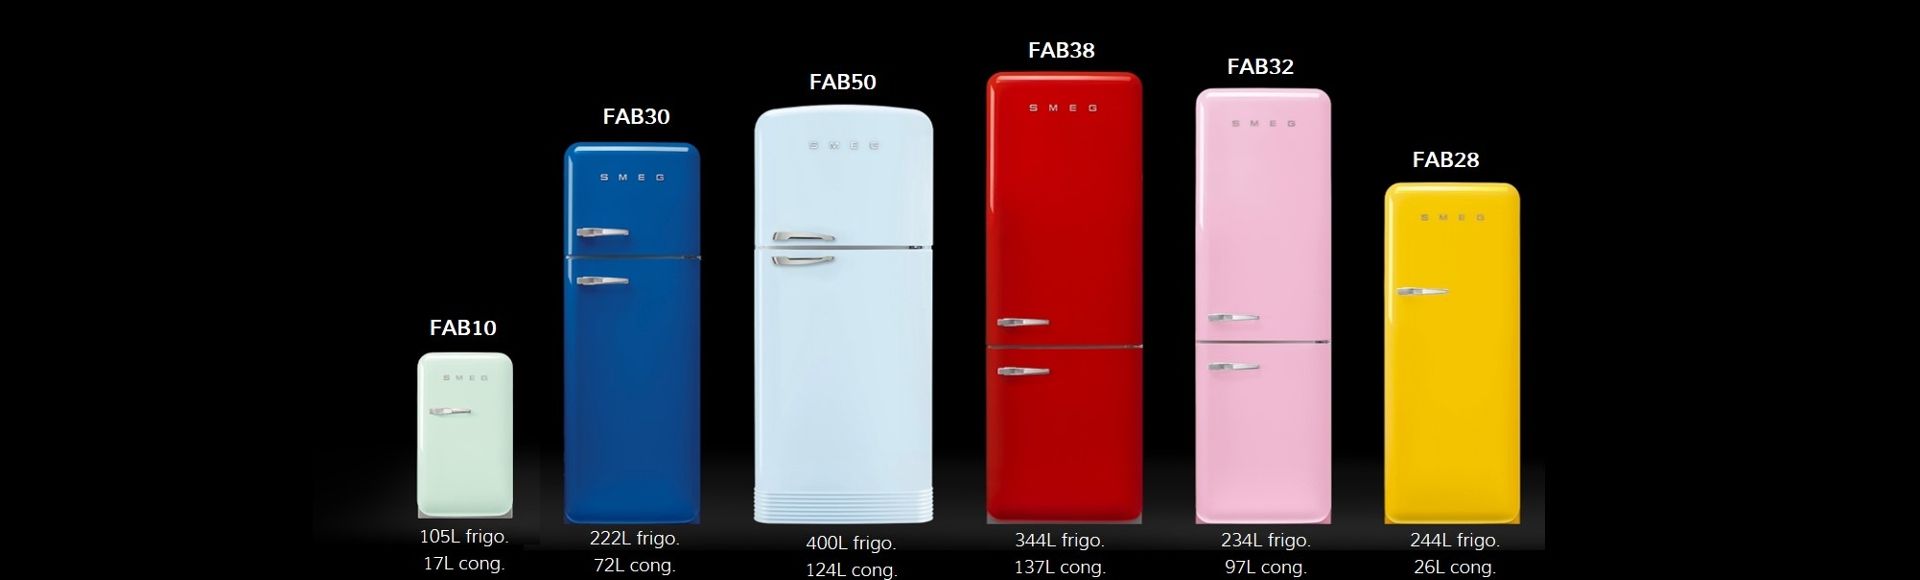 Collection de réfrigérateurs FAB de la gamme 